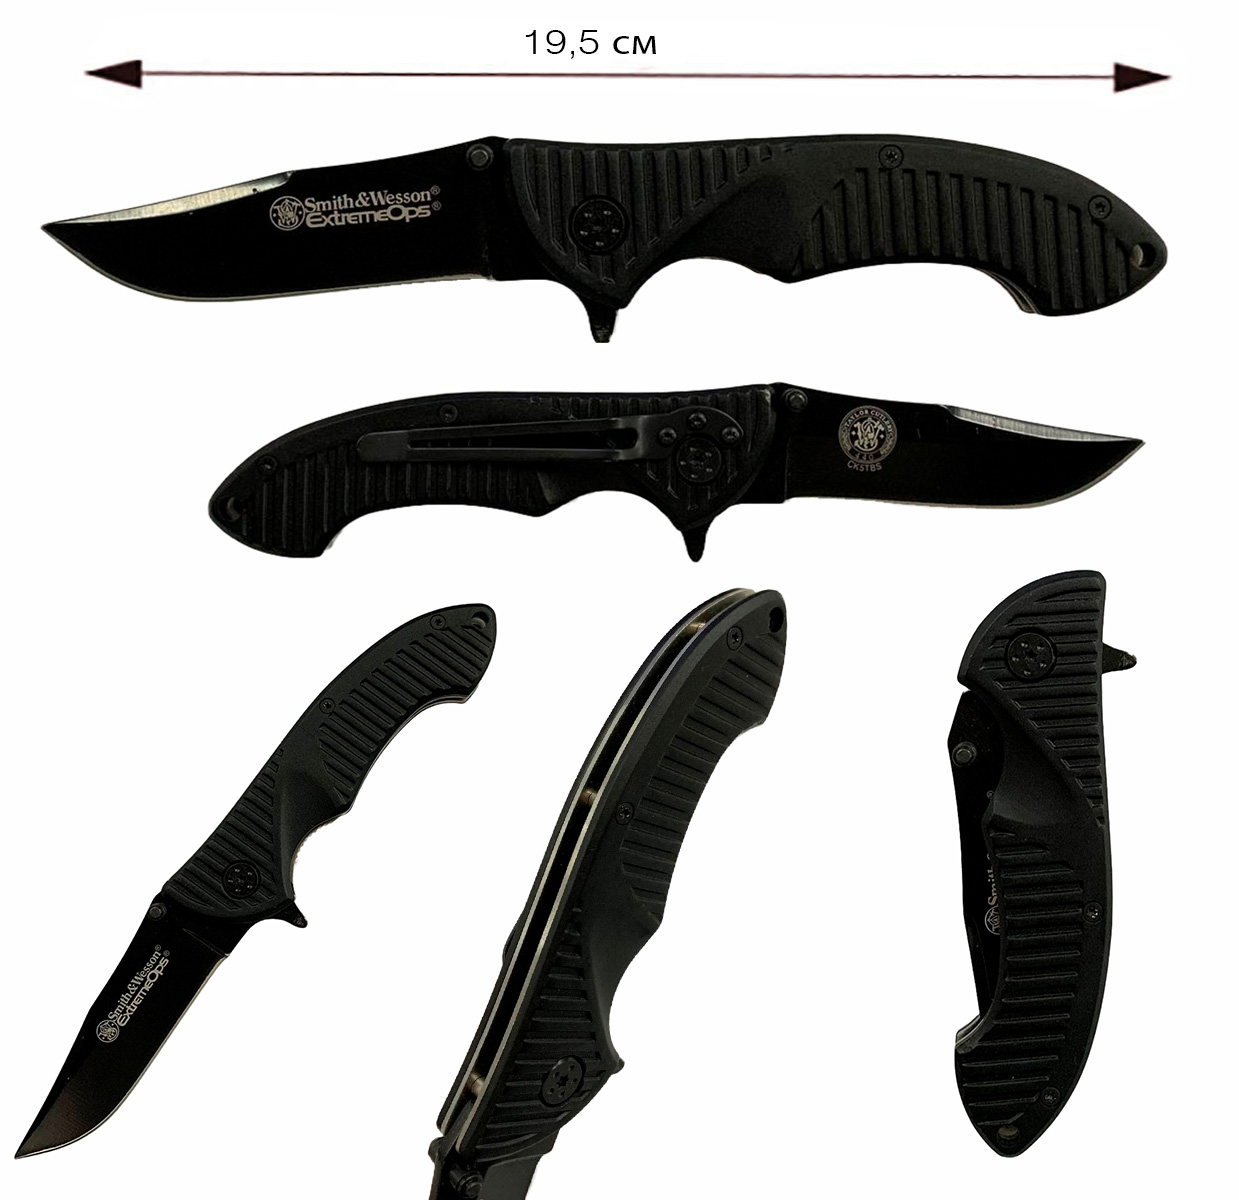 Купить черный складной нож Smith&Wesson Extreme Ops